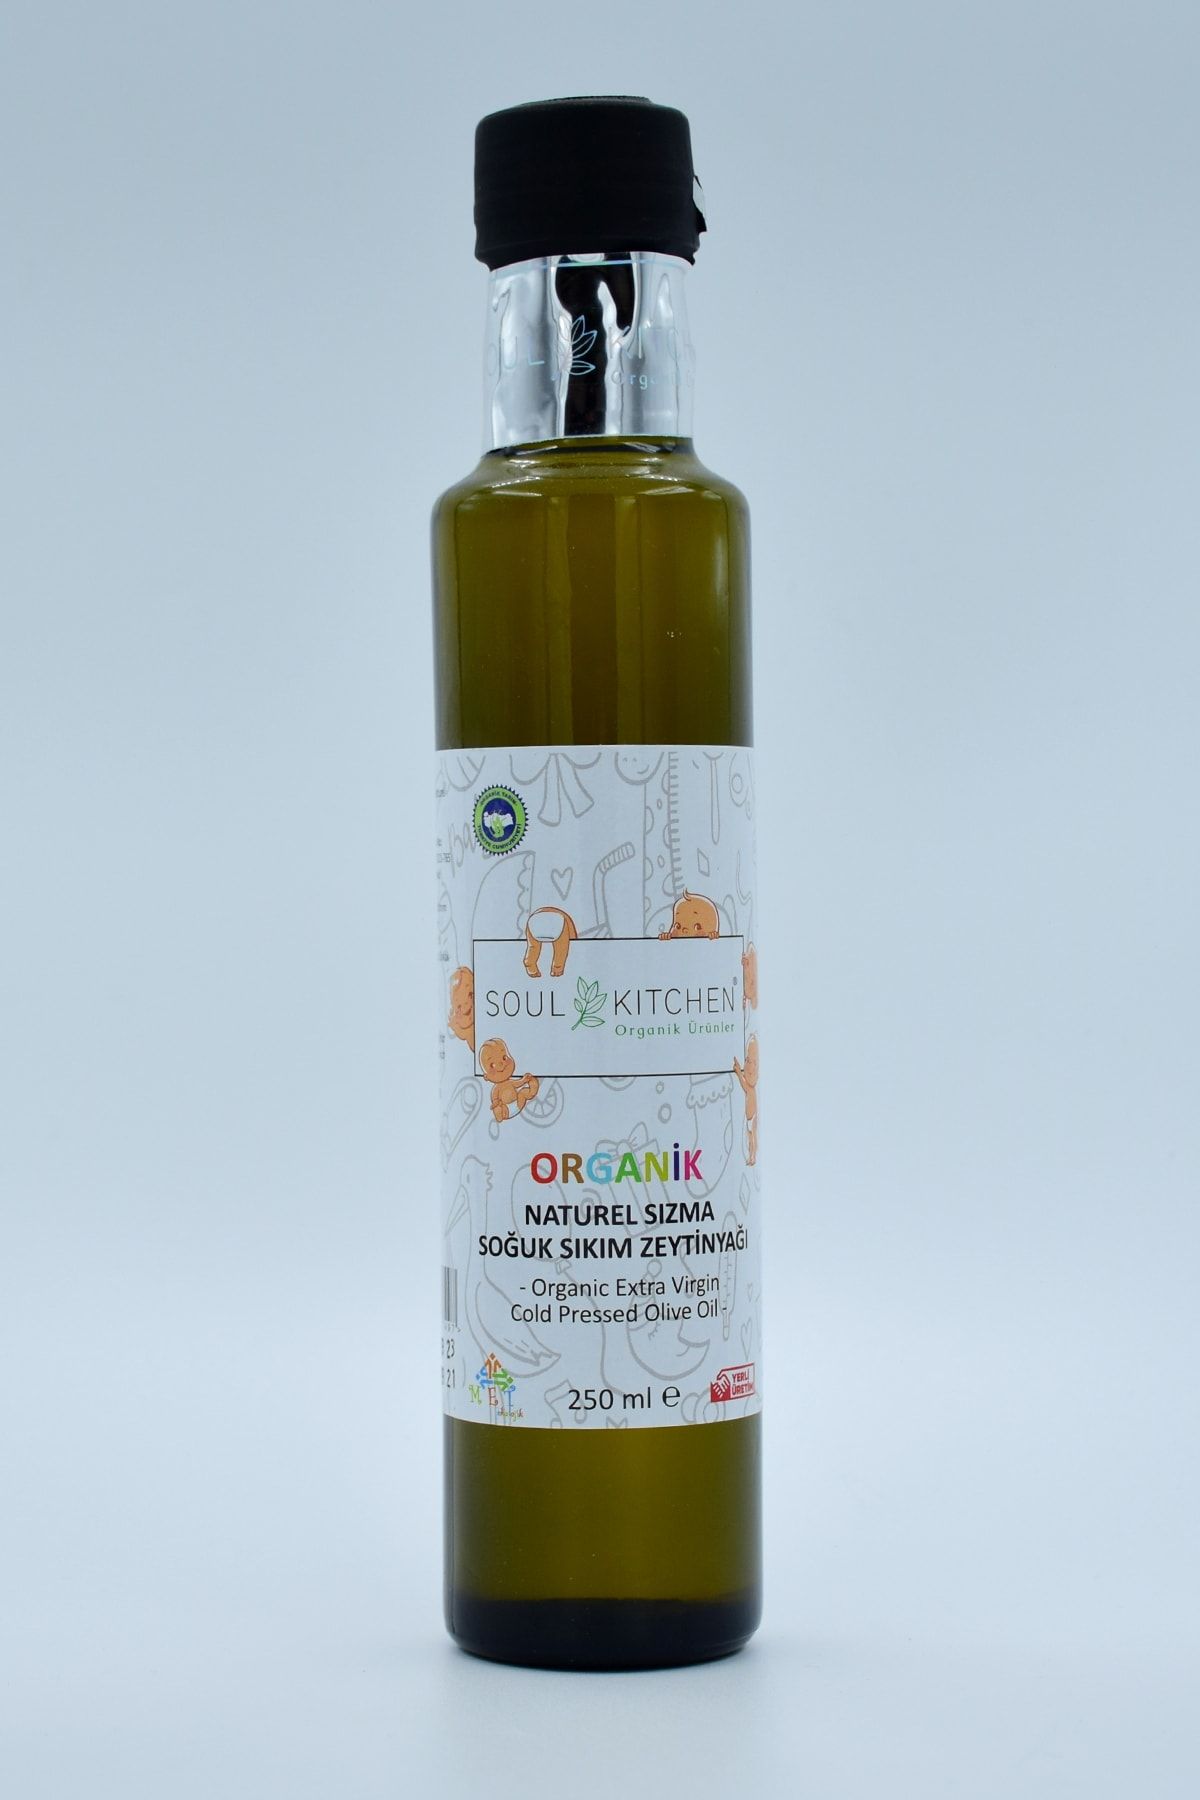 Soul Kitchen Organik Ürünler Organik Bebek Zeytinyağı Soğuk Sıkım Naturel Sızma 250ml-sertifikalı Organik